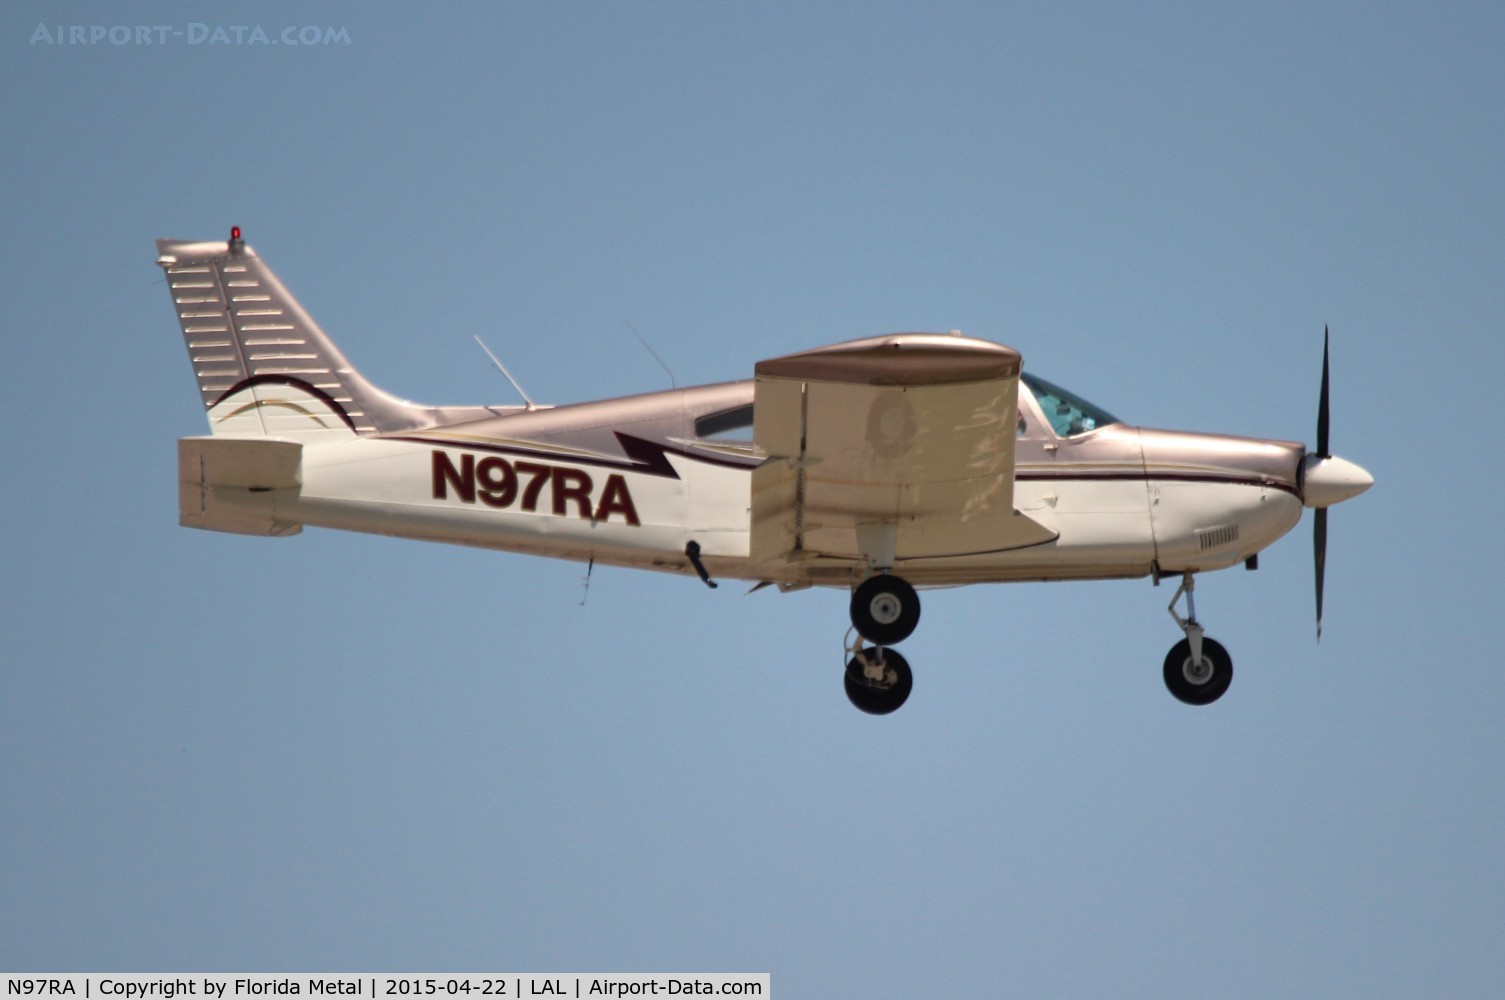 N97RA, 1976 Piper PA-28-235 C/N 28-7610020, PA-28-235